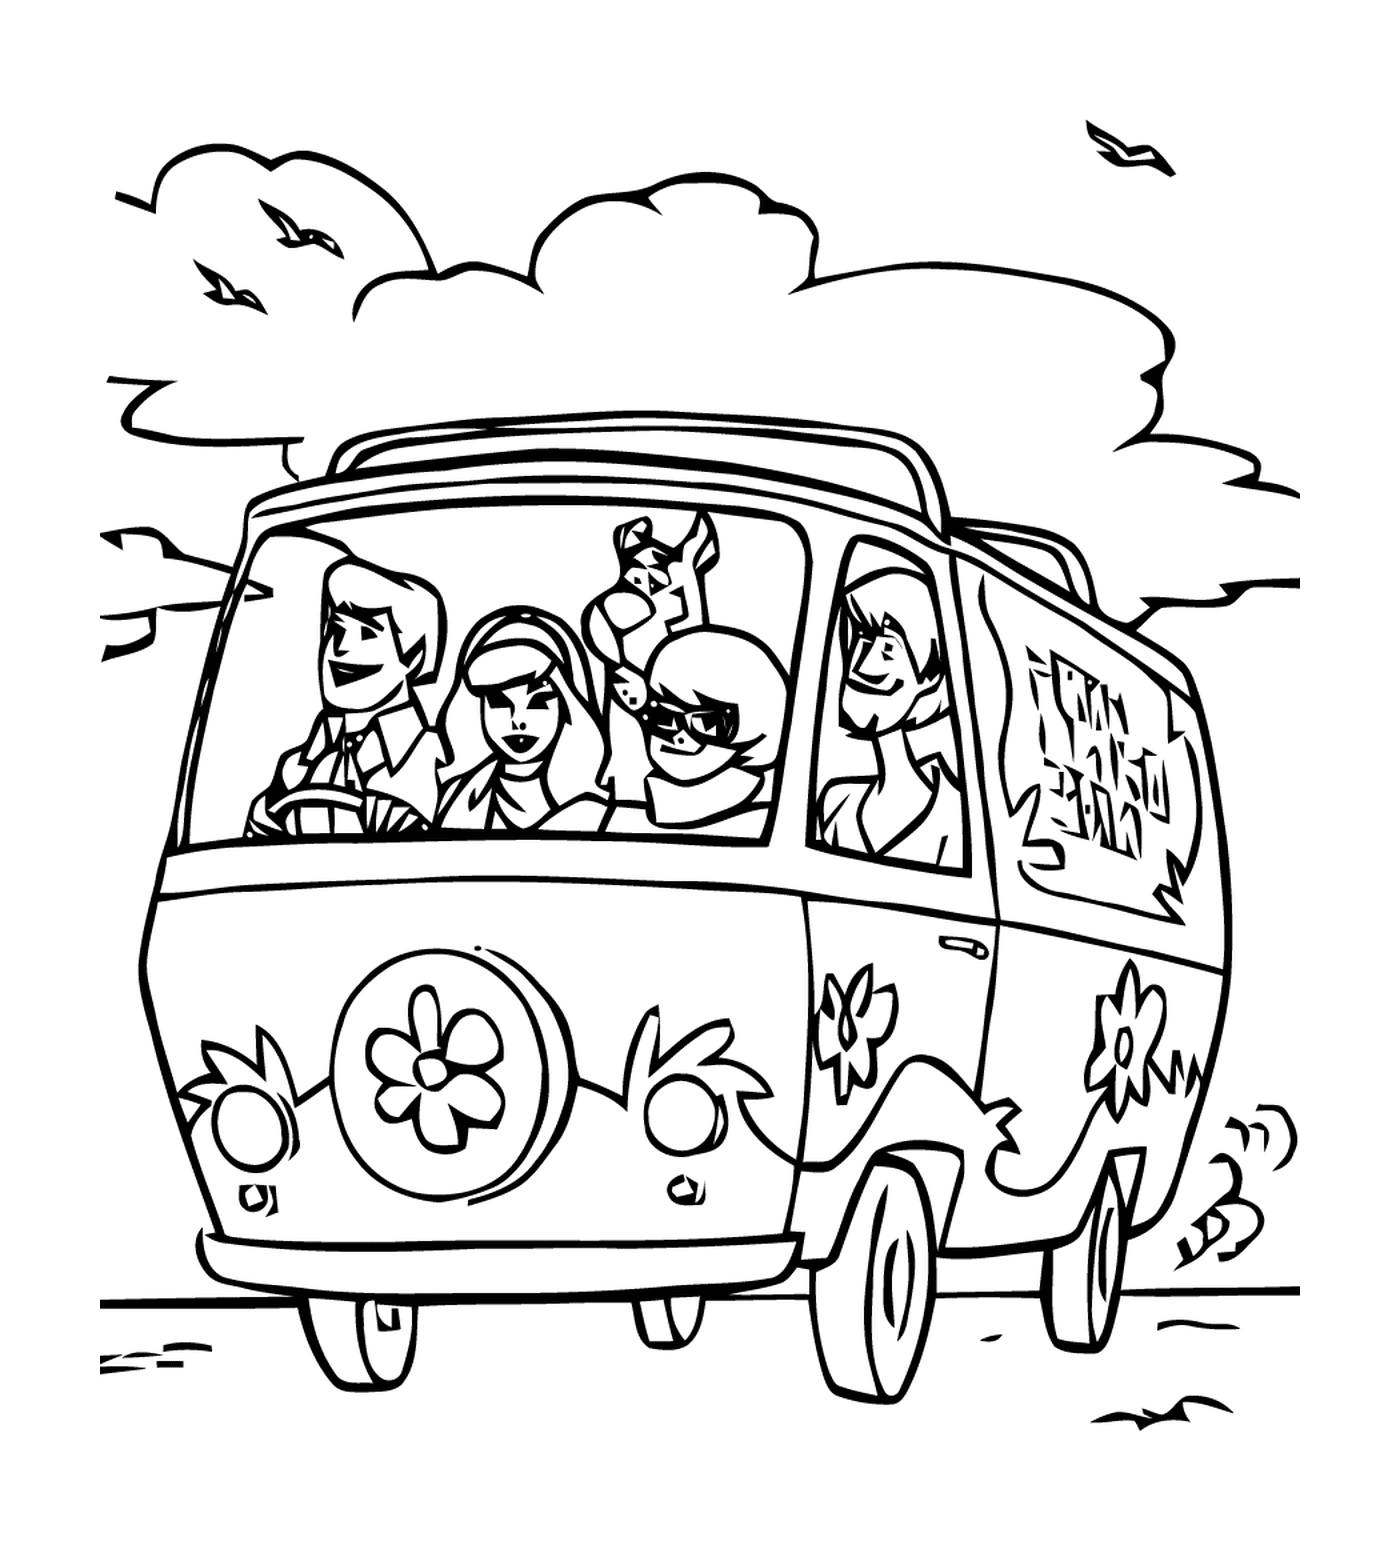   Un groupe de personnes dans une voiture sur la route 